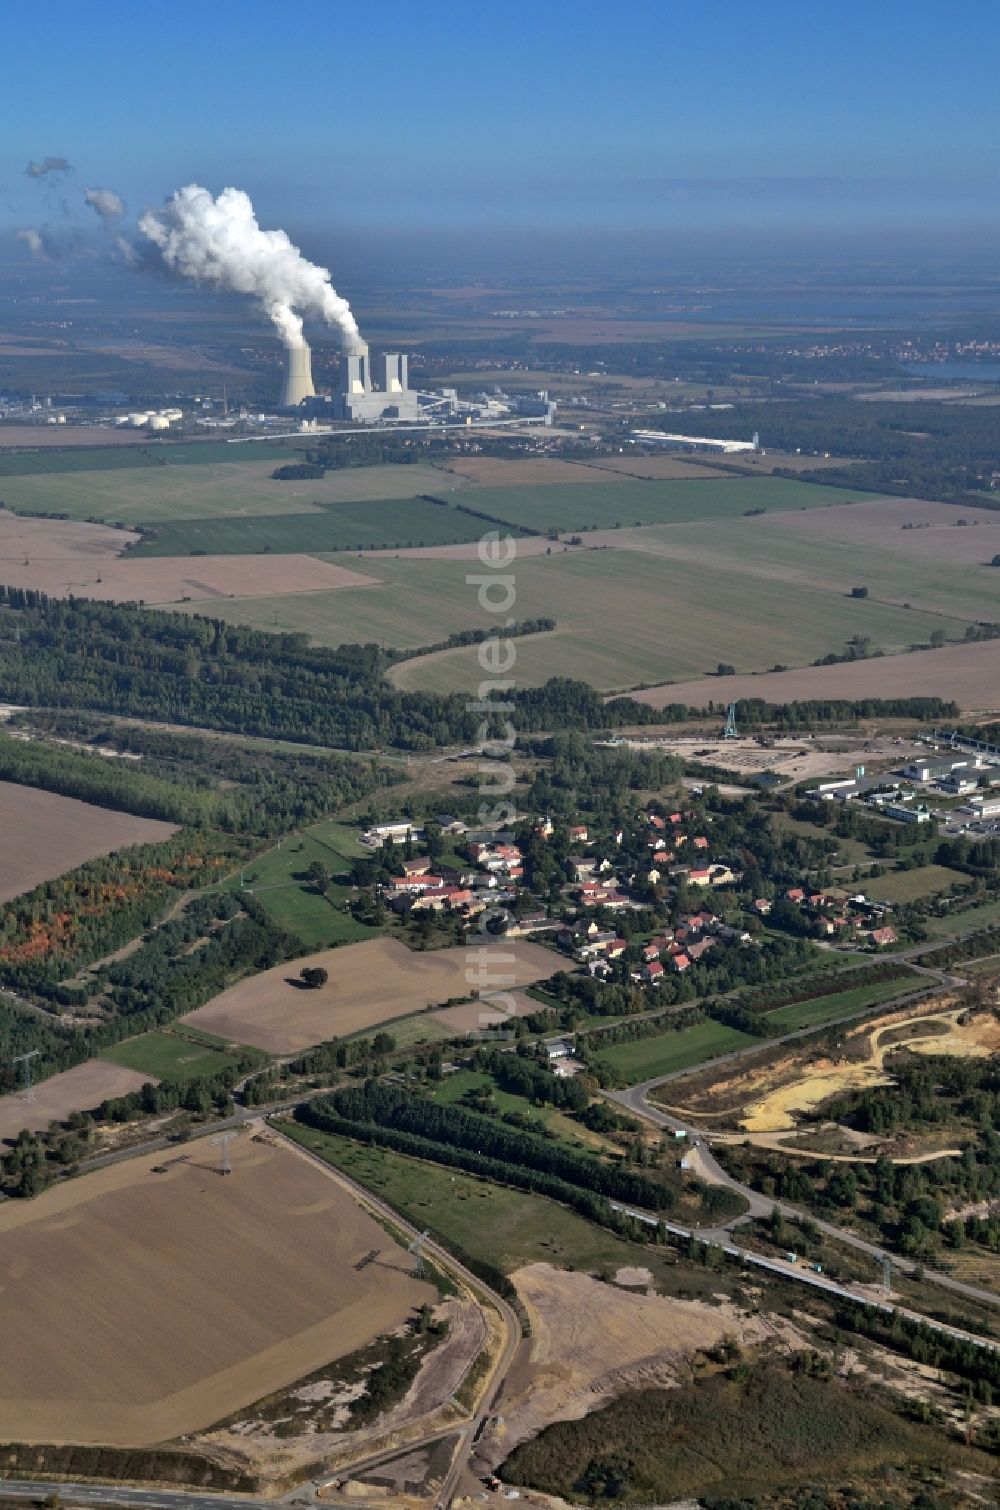 Luftaufnahme Pödelwitz - Vom Abbruch bedrohte Dorf Pödelwitz am Rande des Braunkohle - Tagebaus Schleenhain in Sachsen